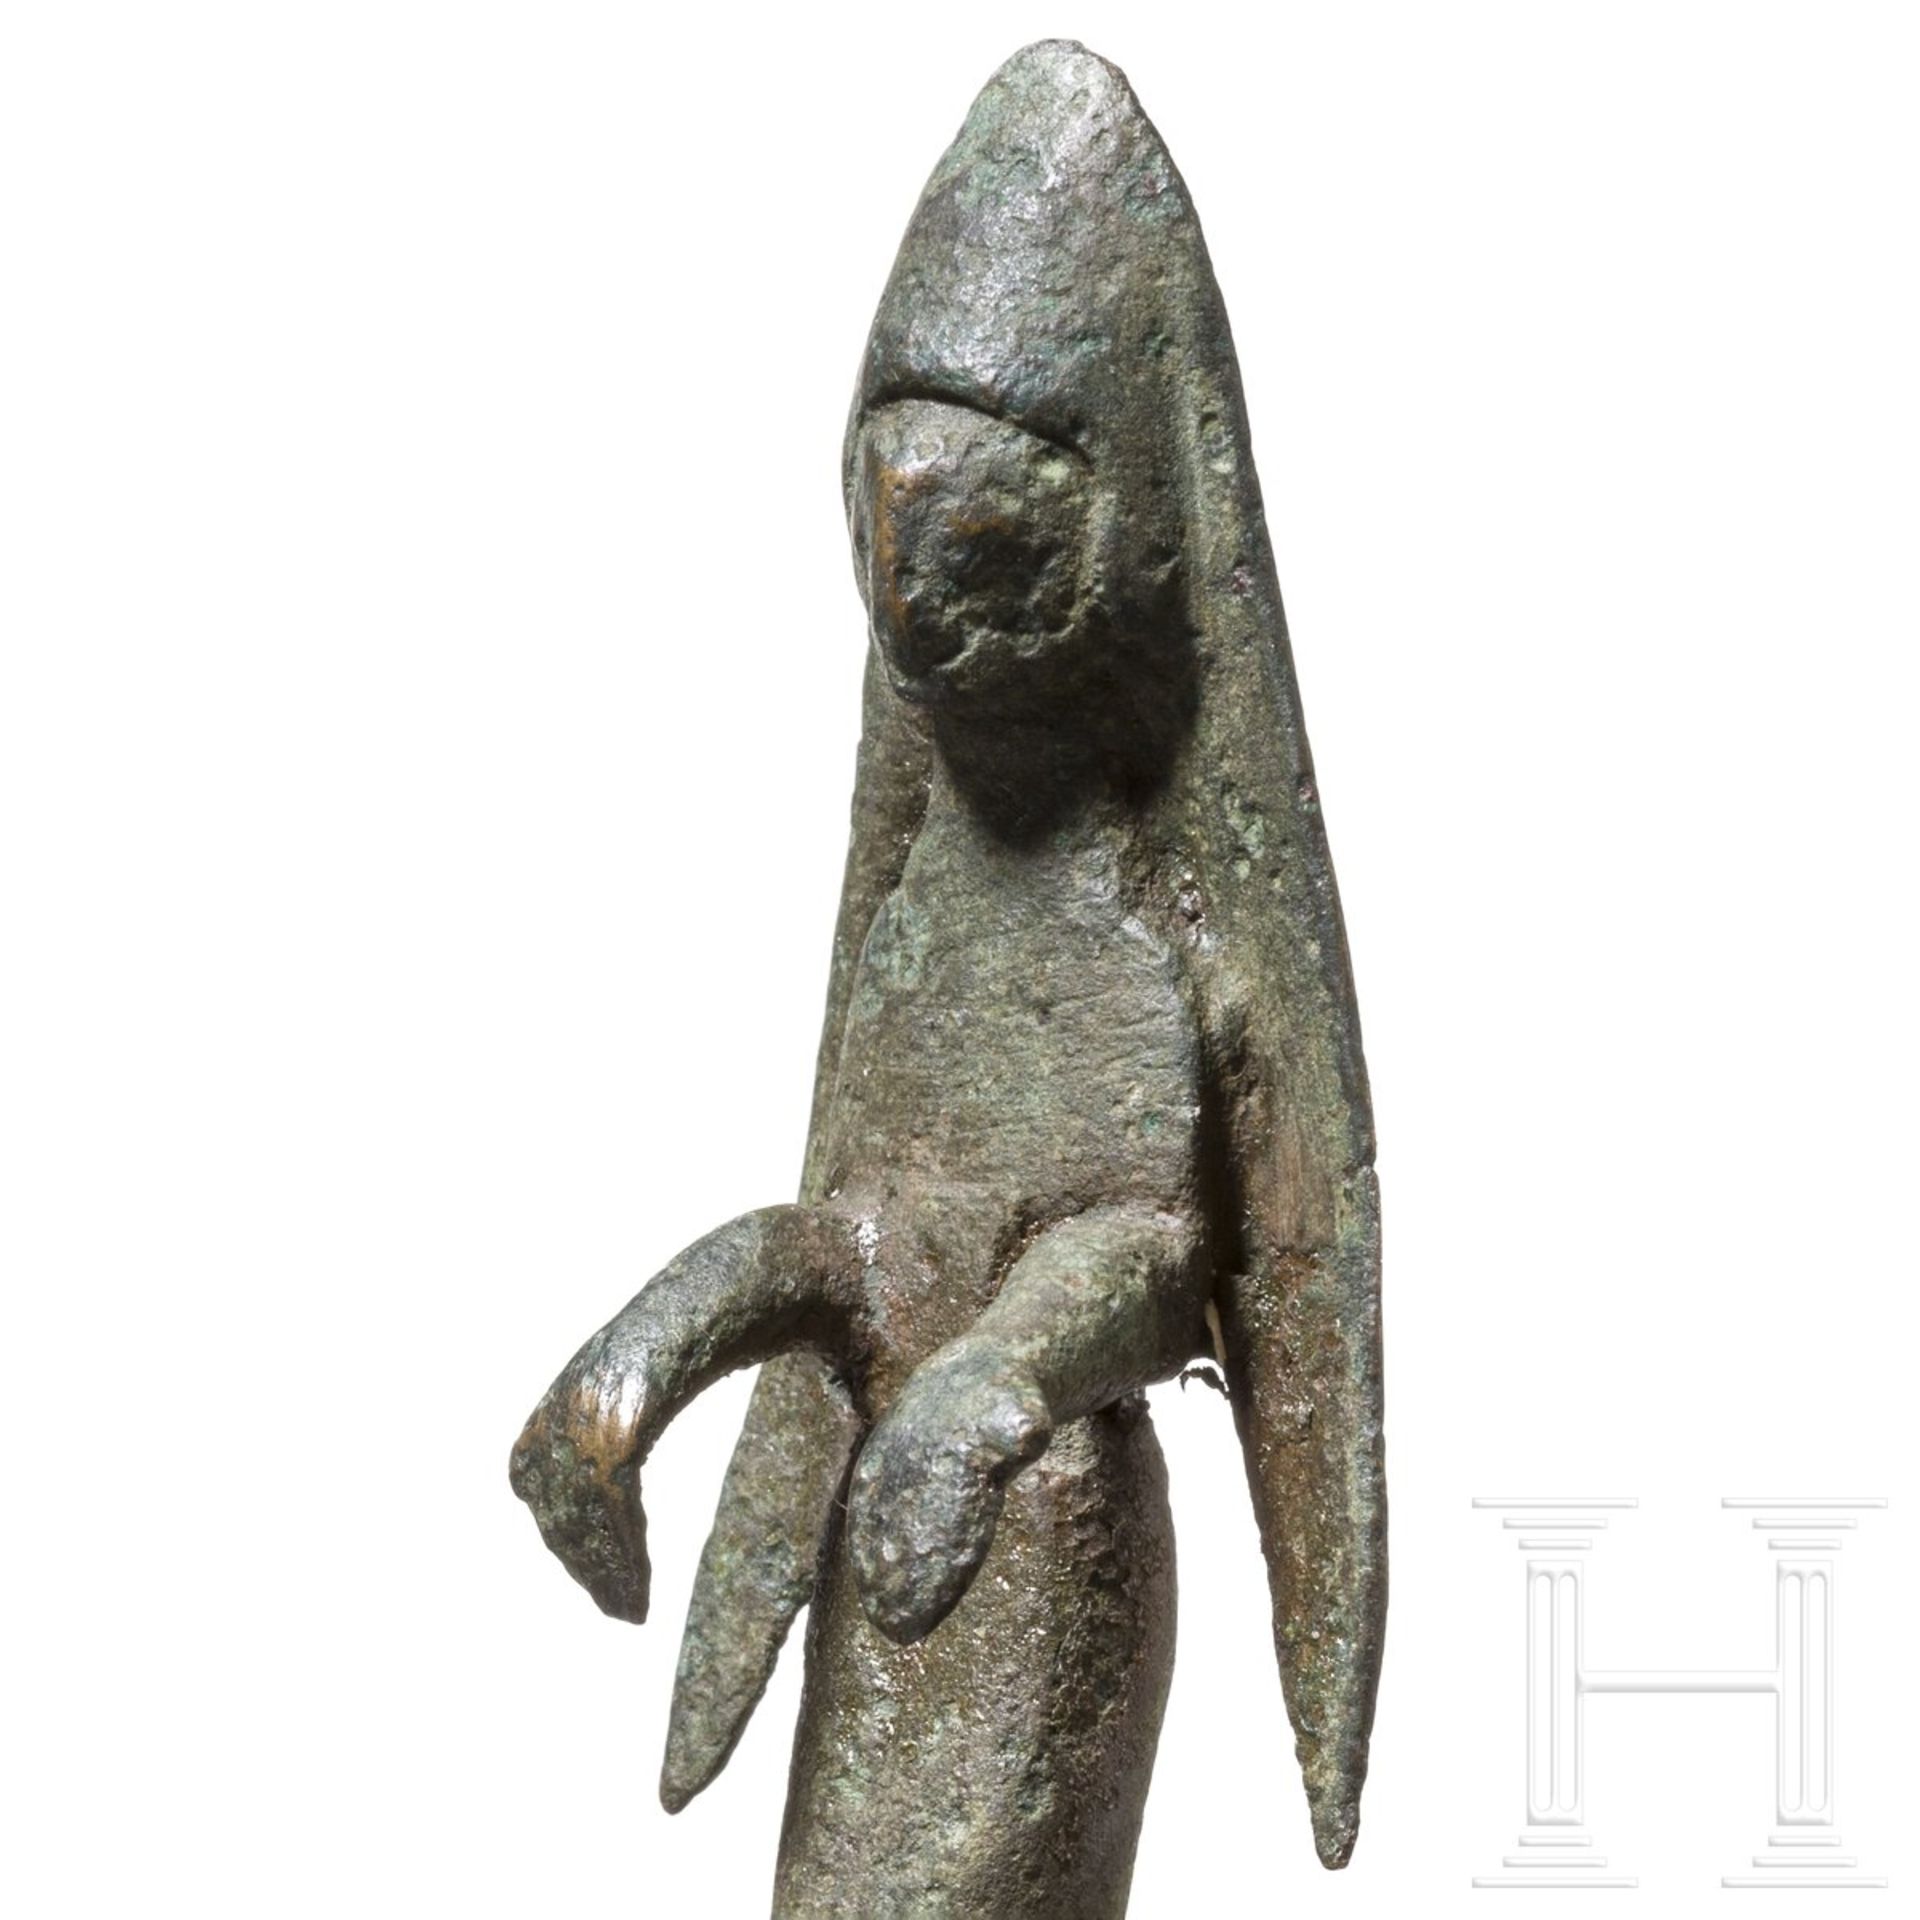 Votivstatuette einer offerierenden Frau mit Schleier, iberisch, 4. - 2. Jhdt. v. Chr. - Image 4 of 4